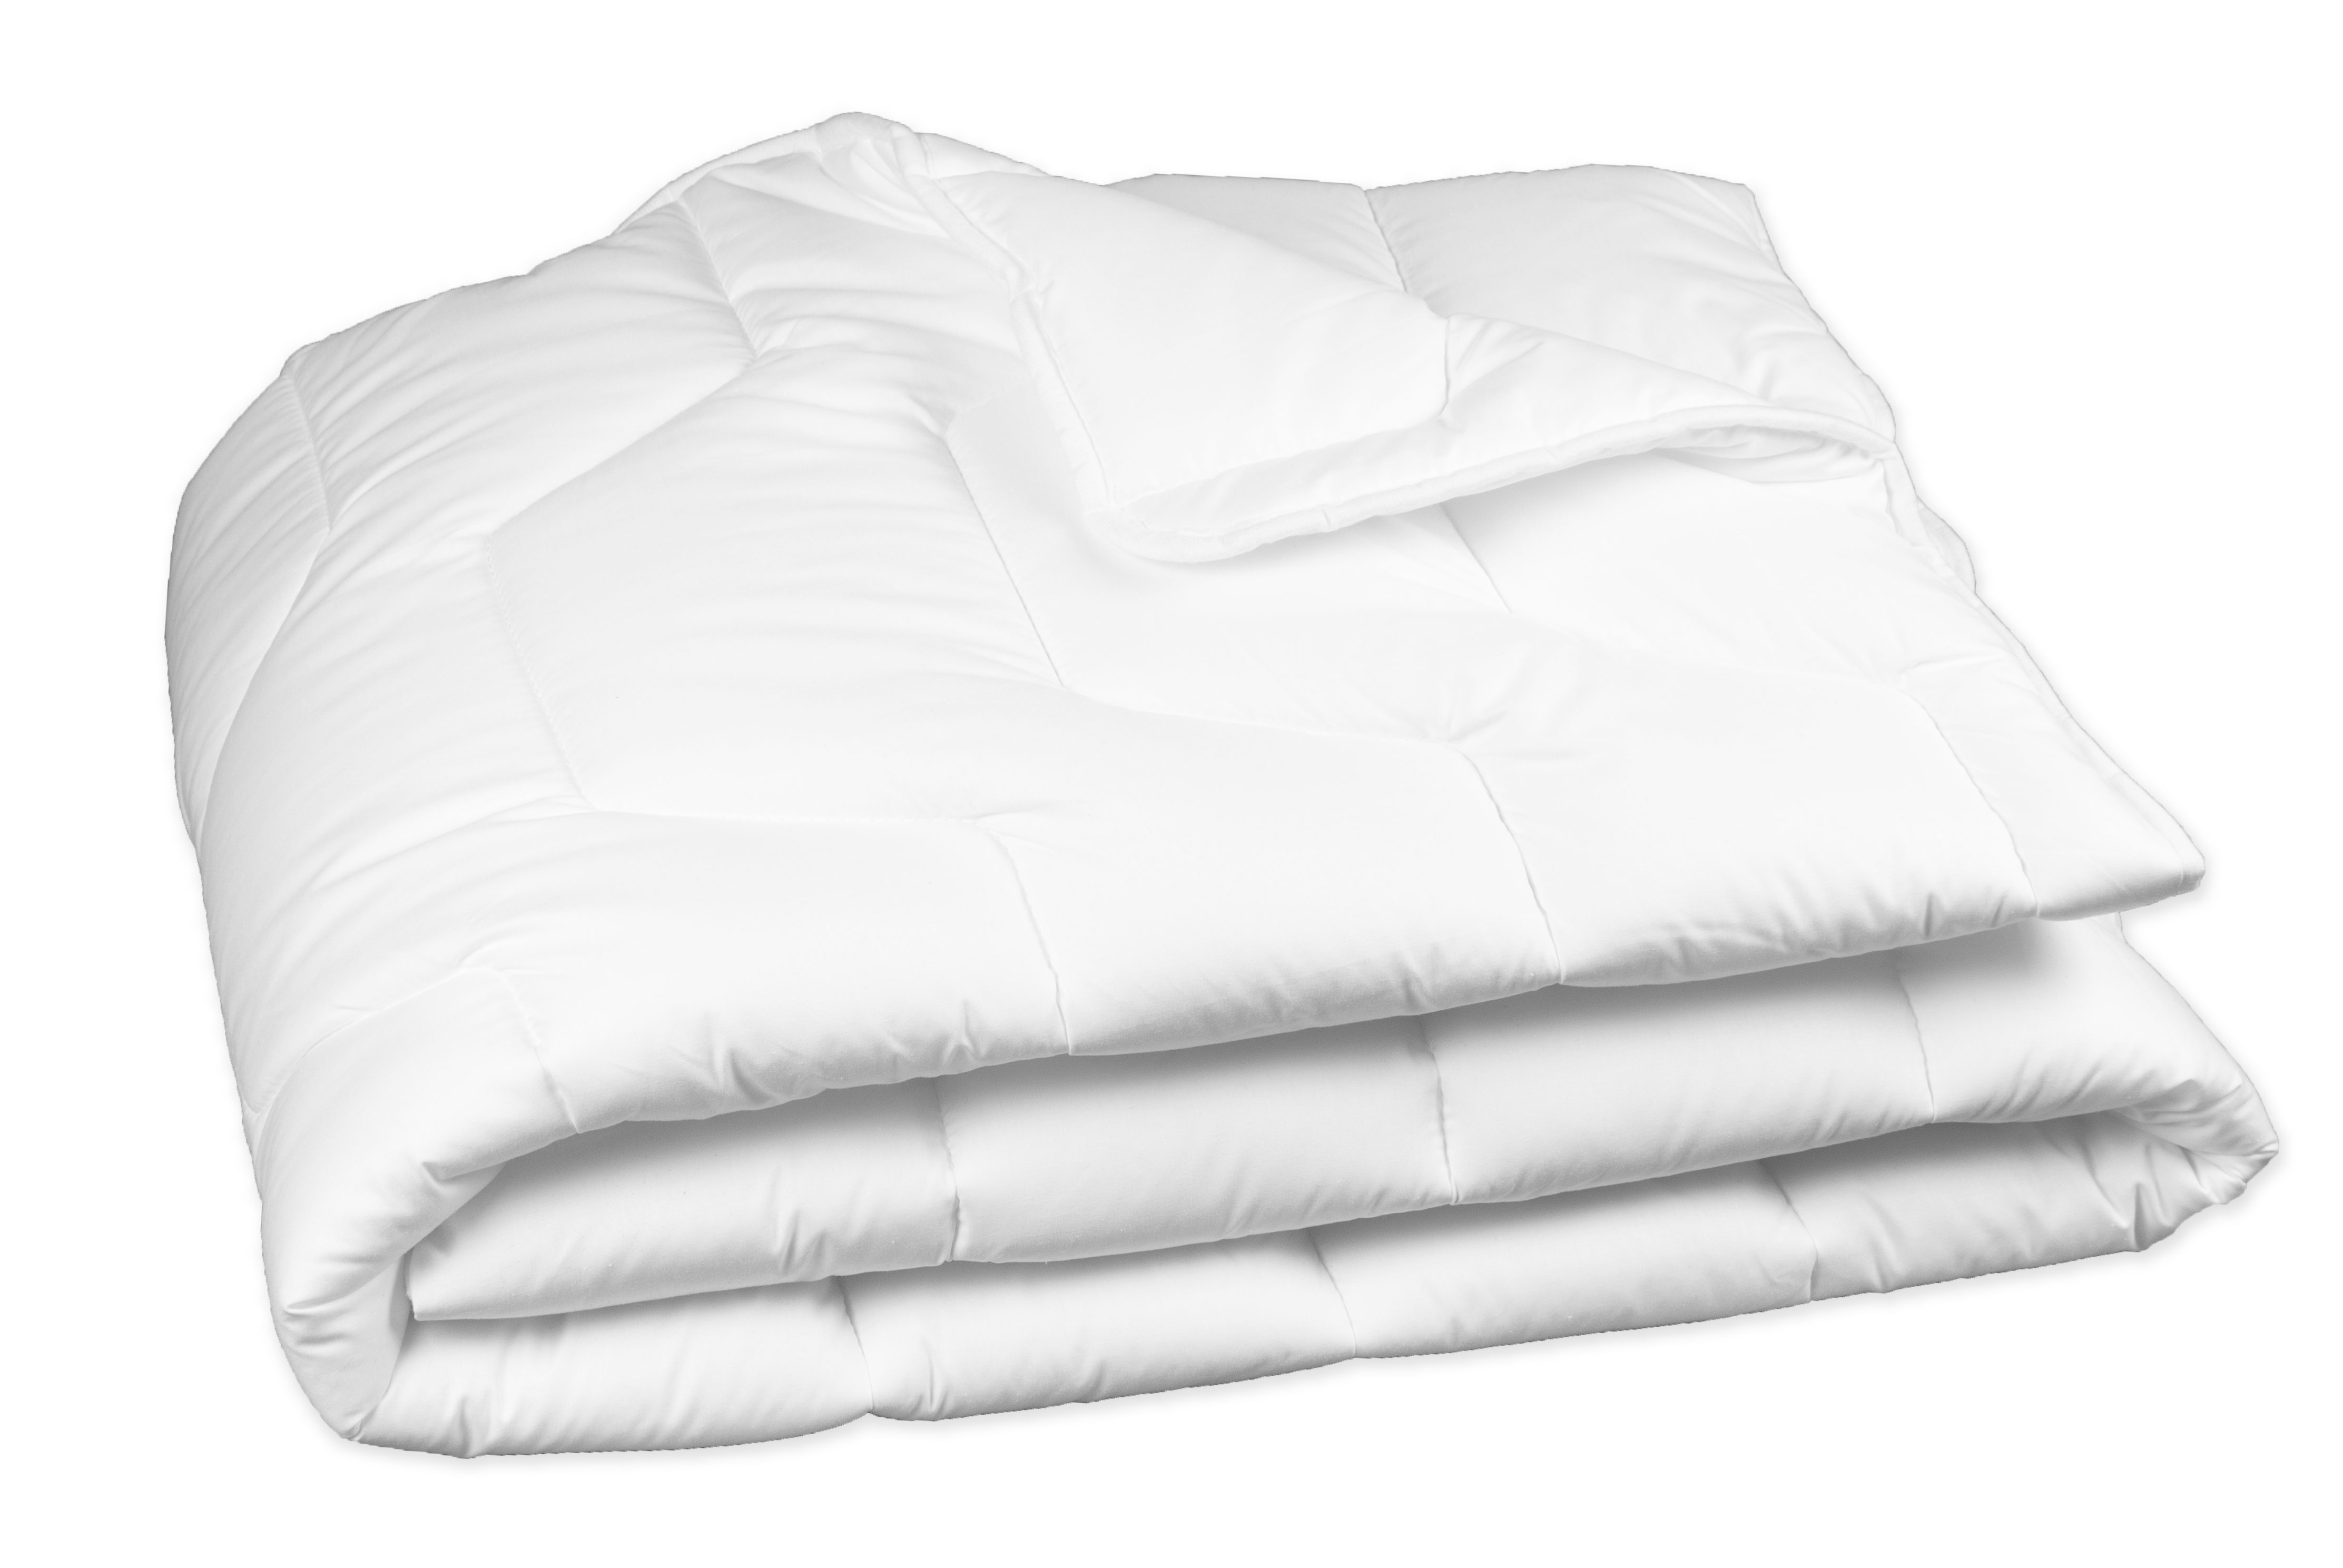 Bettdecke 135x200 cm, 1000 g, 100% Polyester, weiß